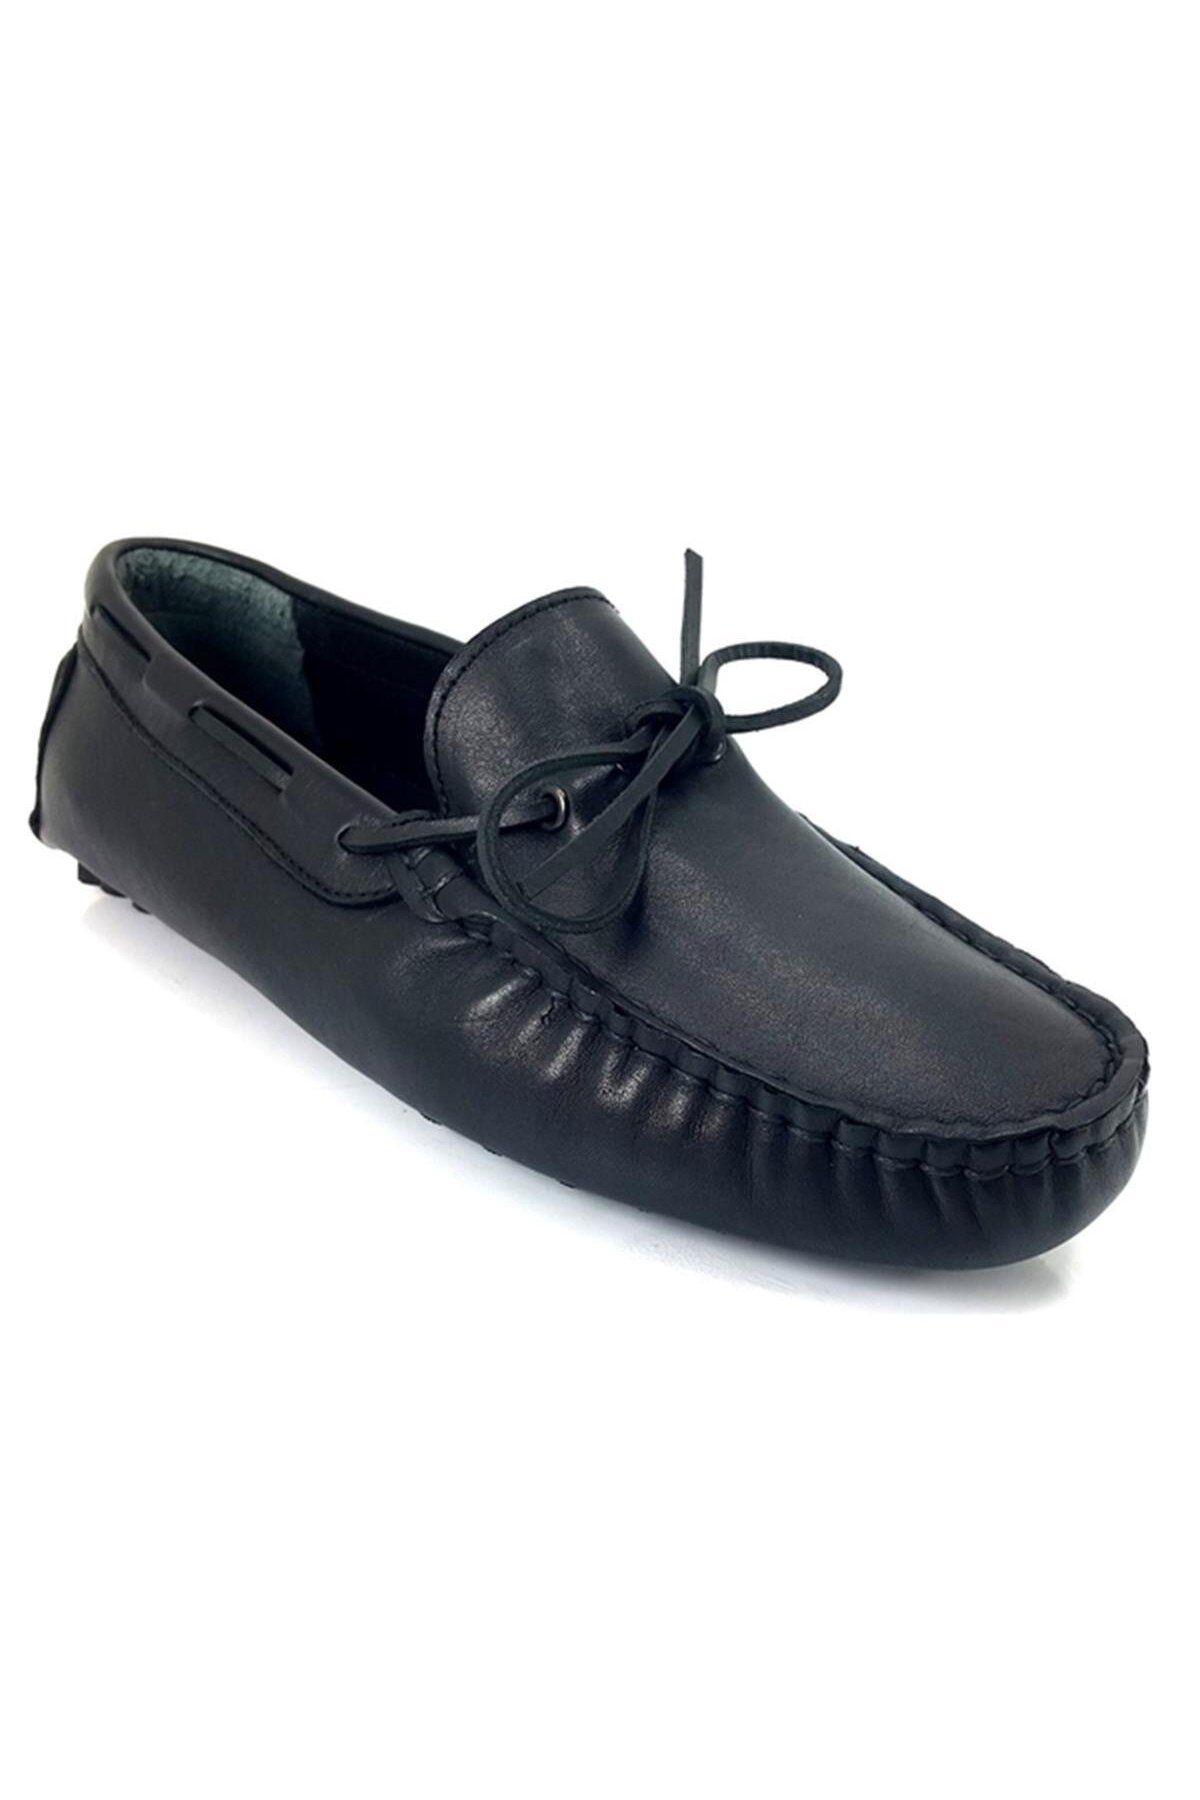 Sail Lakers 3791 22ya Günlük Erkek Ayakkabı - Siyah